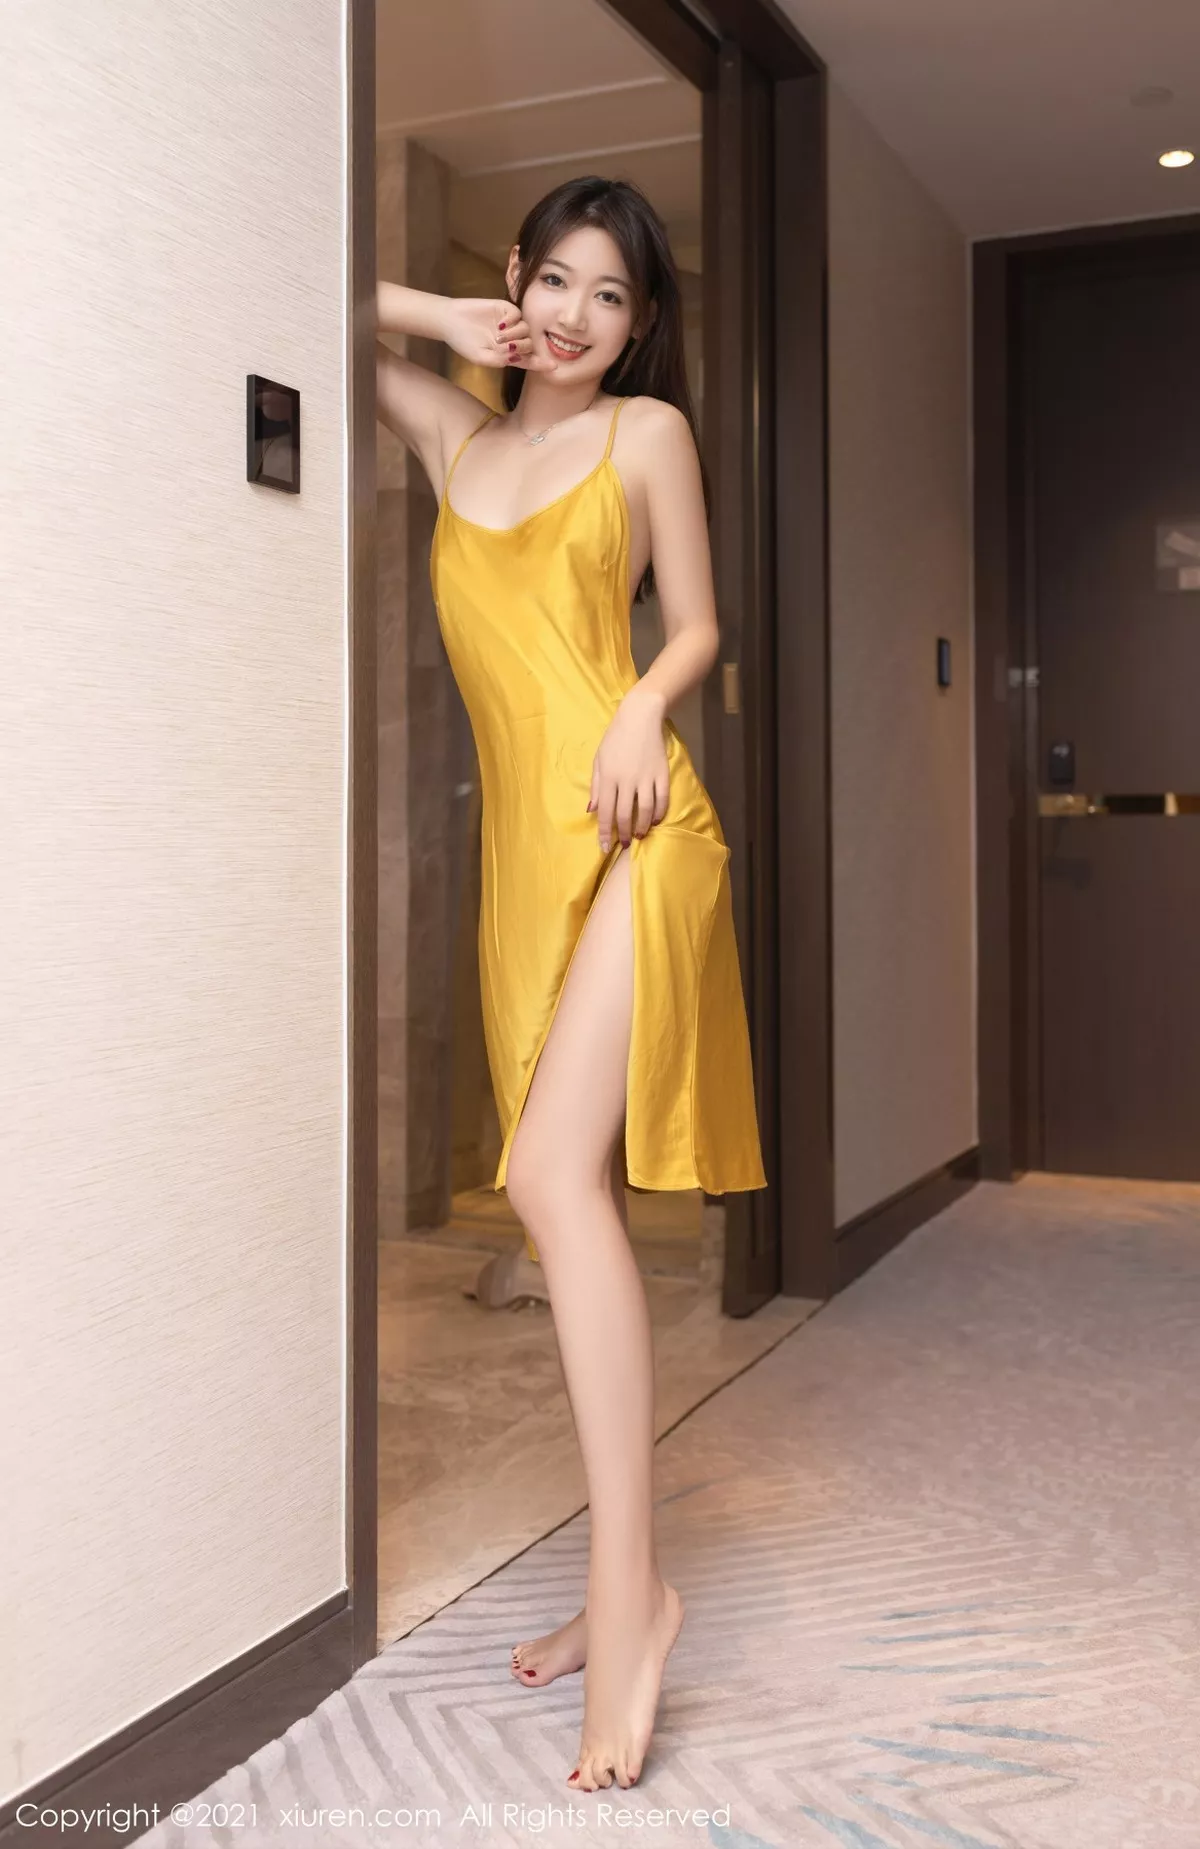 XiuRen第4003期_模特唐安琪女友旅行主题宾馆浴室性感吊裙秀完美身材诱惑写真72P